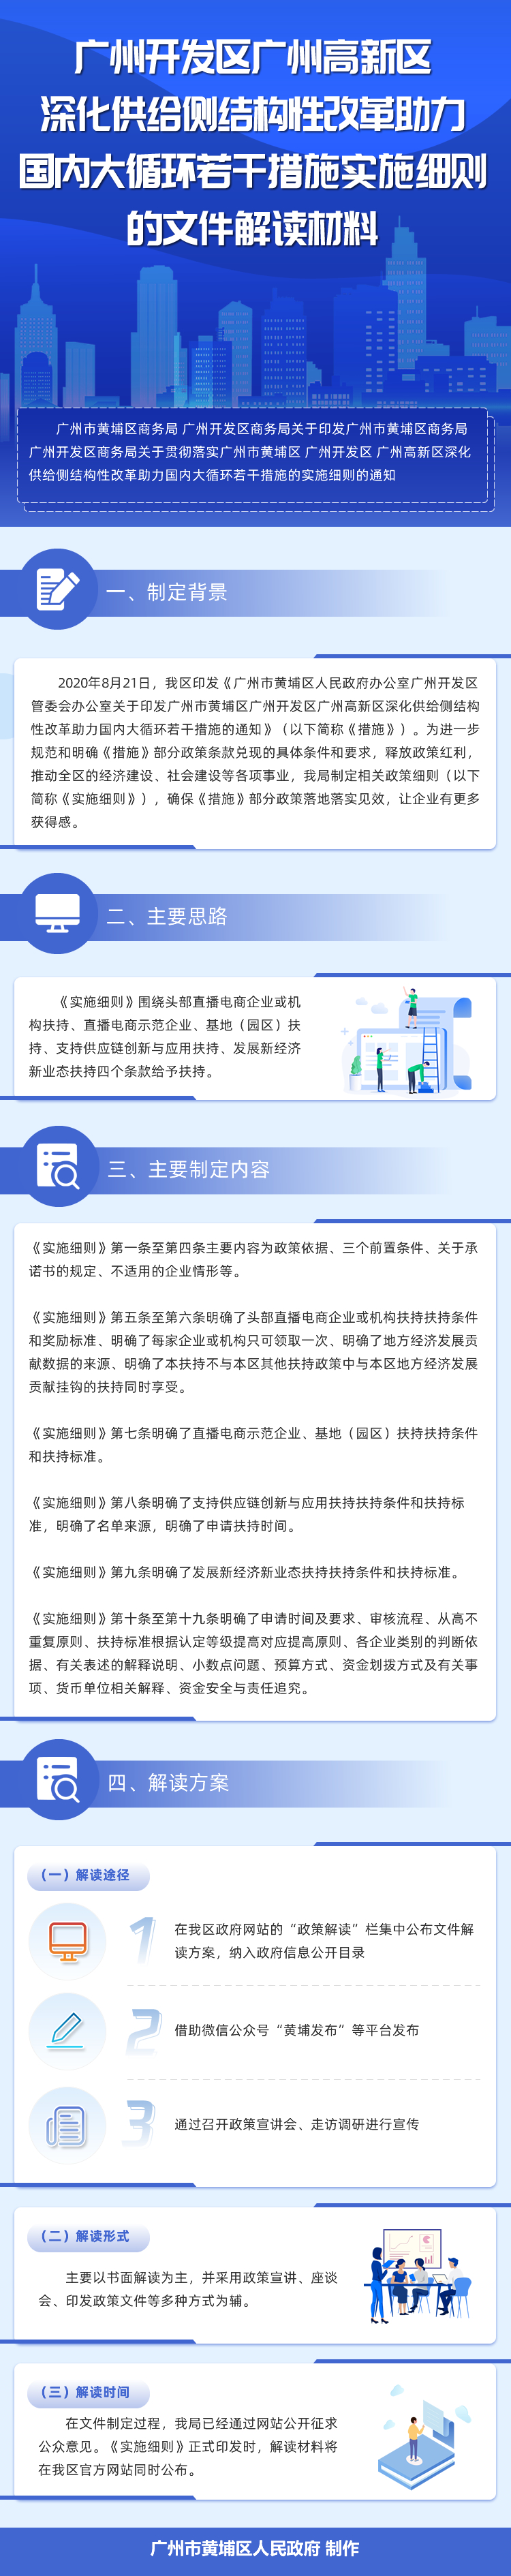 广州开发区广州高新区深化供给侧结构性改革助力国内大循环若干措施实施细则的文件解读材料.jpg